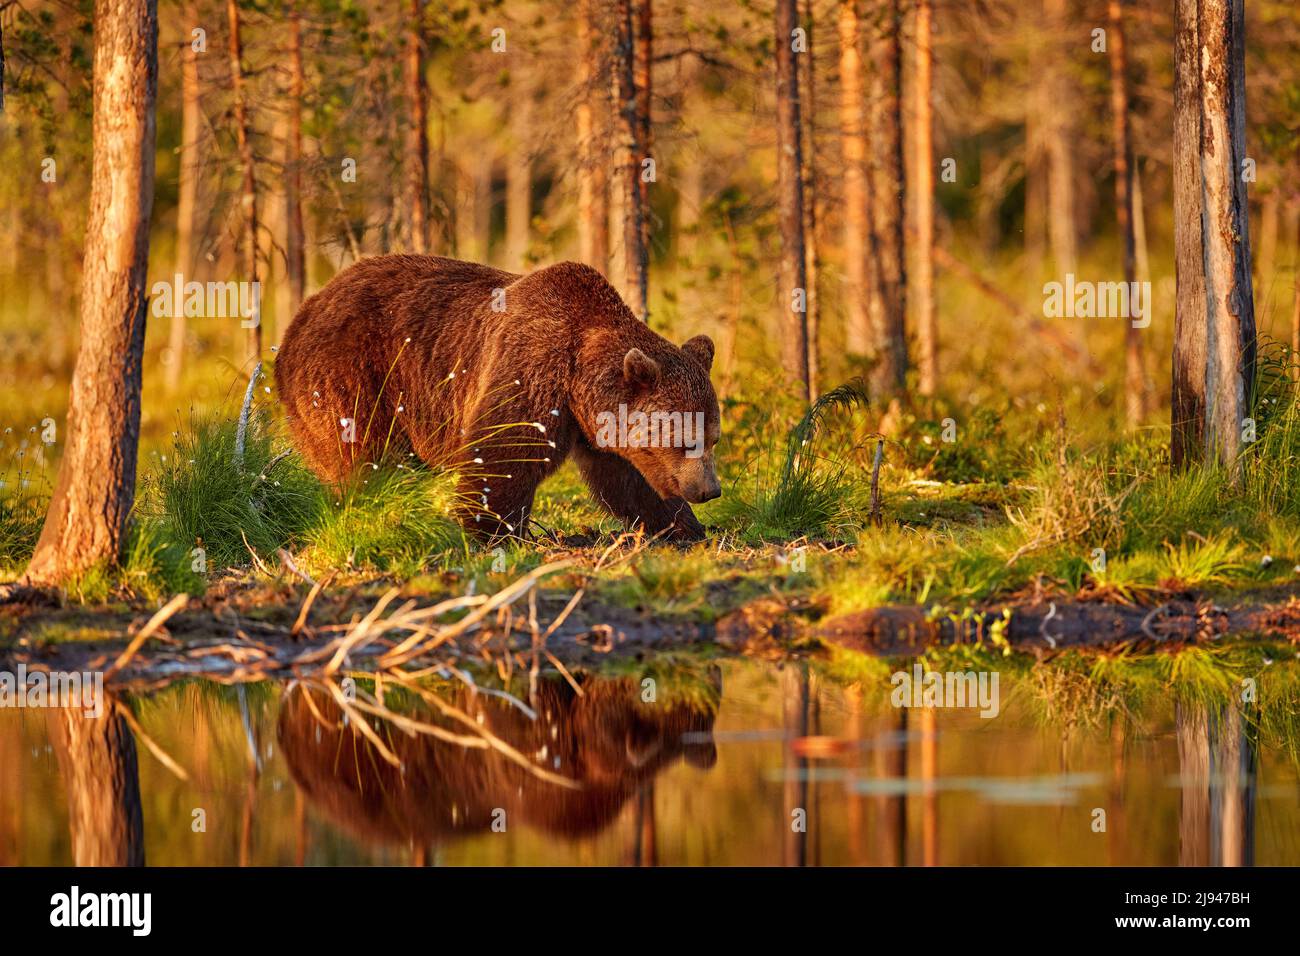 Sommerwild, Braunbär. Gefährliches Tier in der Natur Wald und Wiese Lebensraum. Wildtierszene aus Finnland in der Nähe der russischen Grenze. Stockfoto